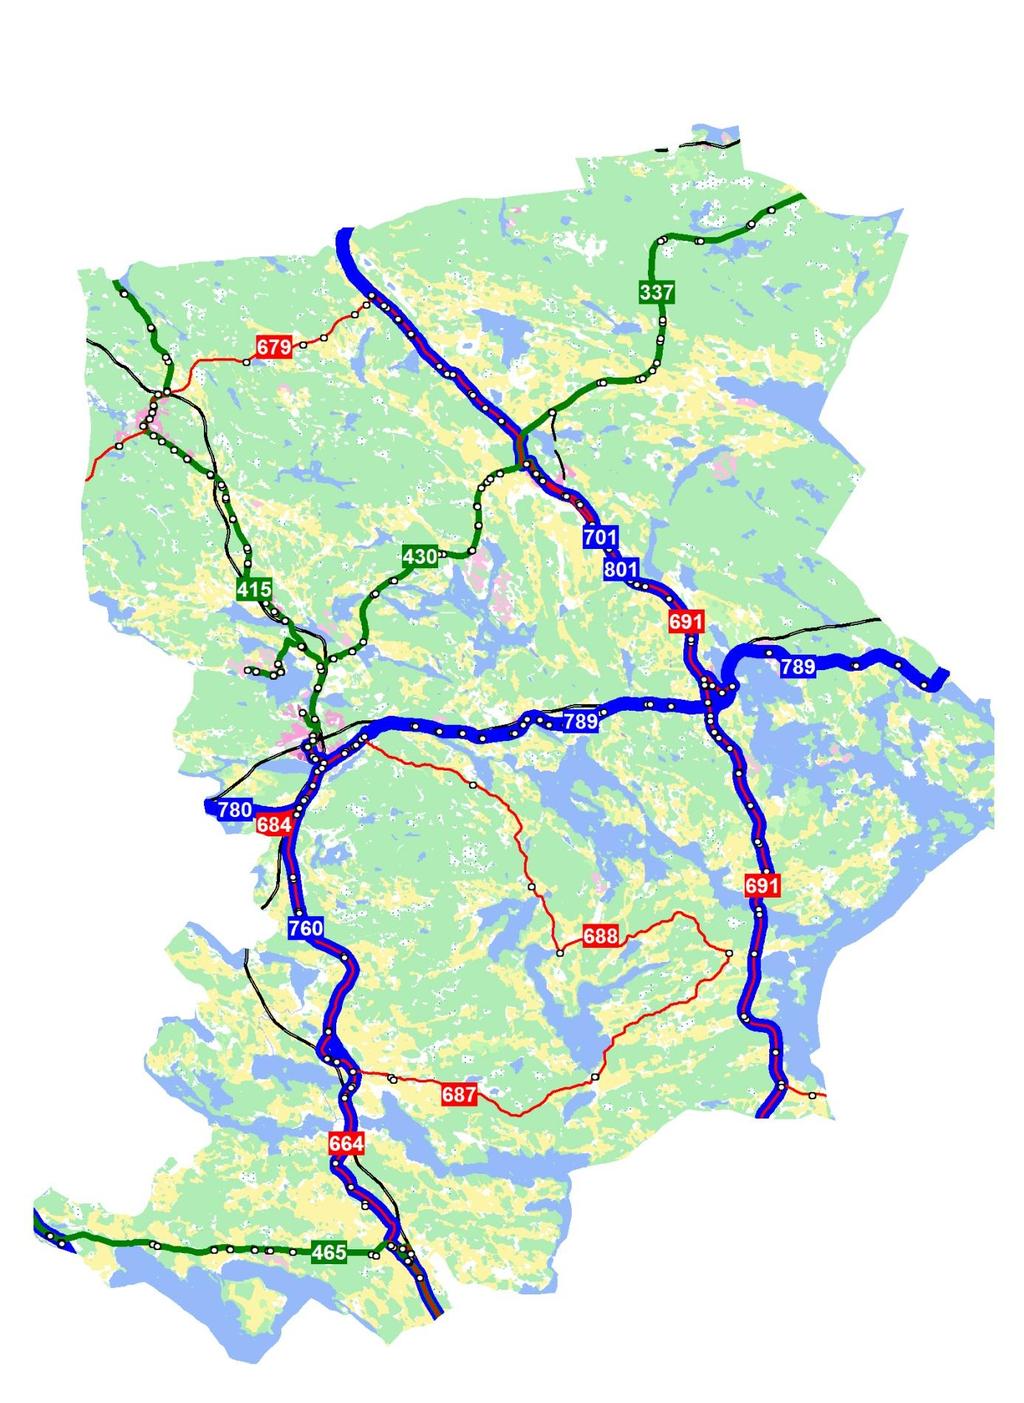 Dagens linjenät (buss) i Flens kommun uppdelat på regionala linjer (blå färg), lokala